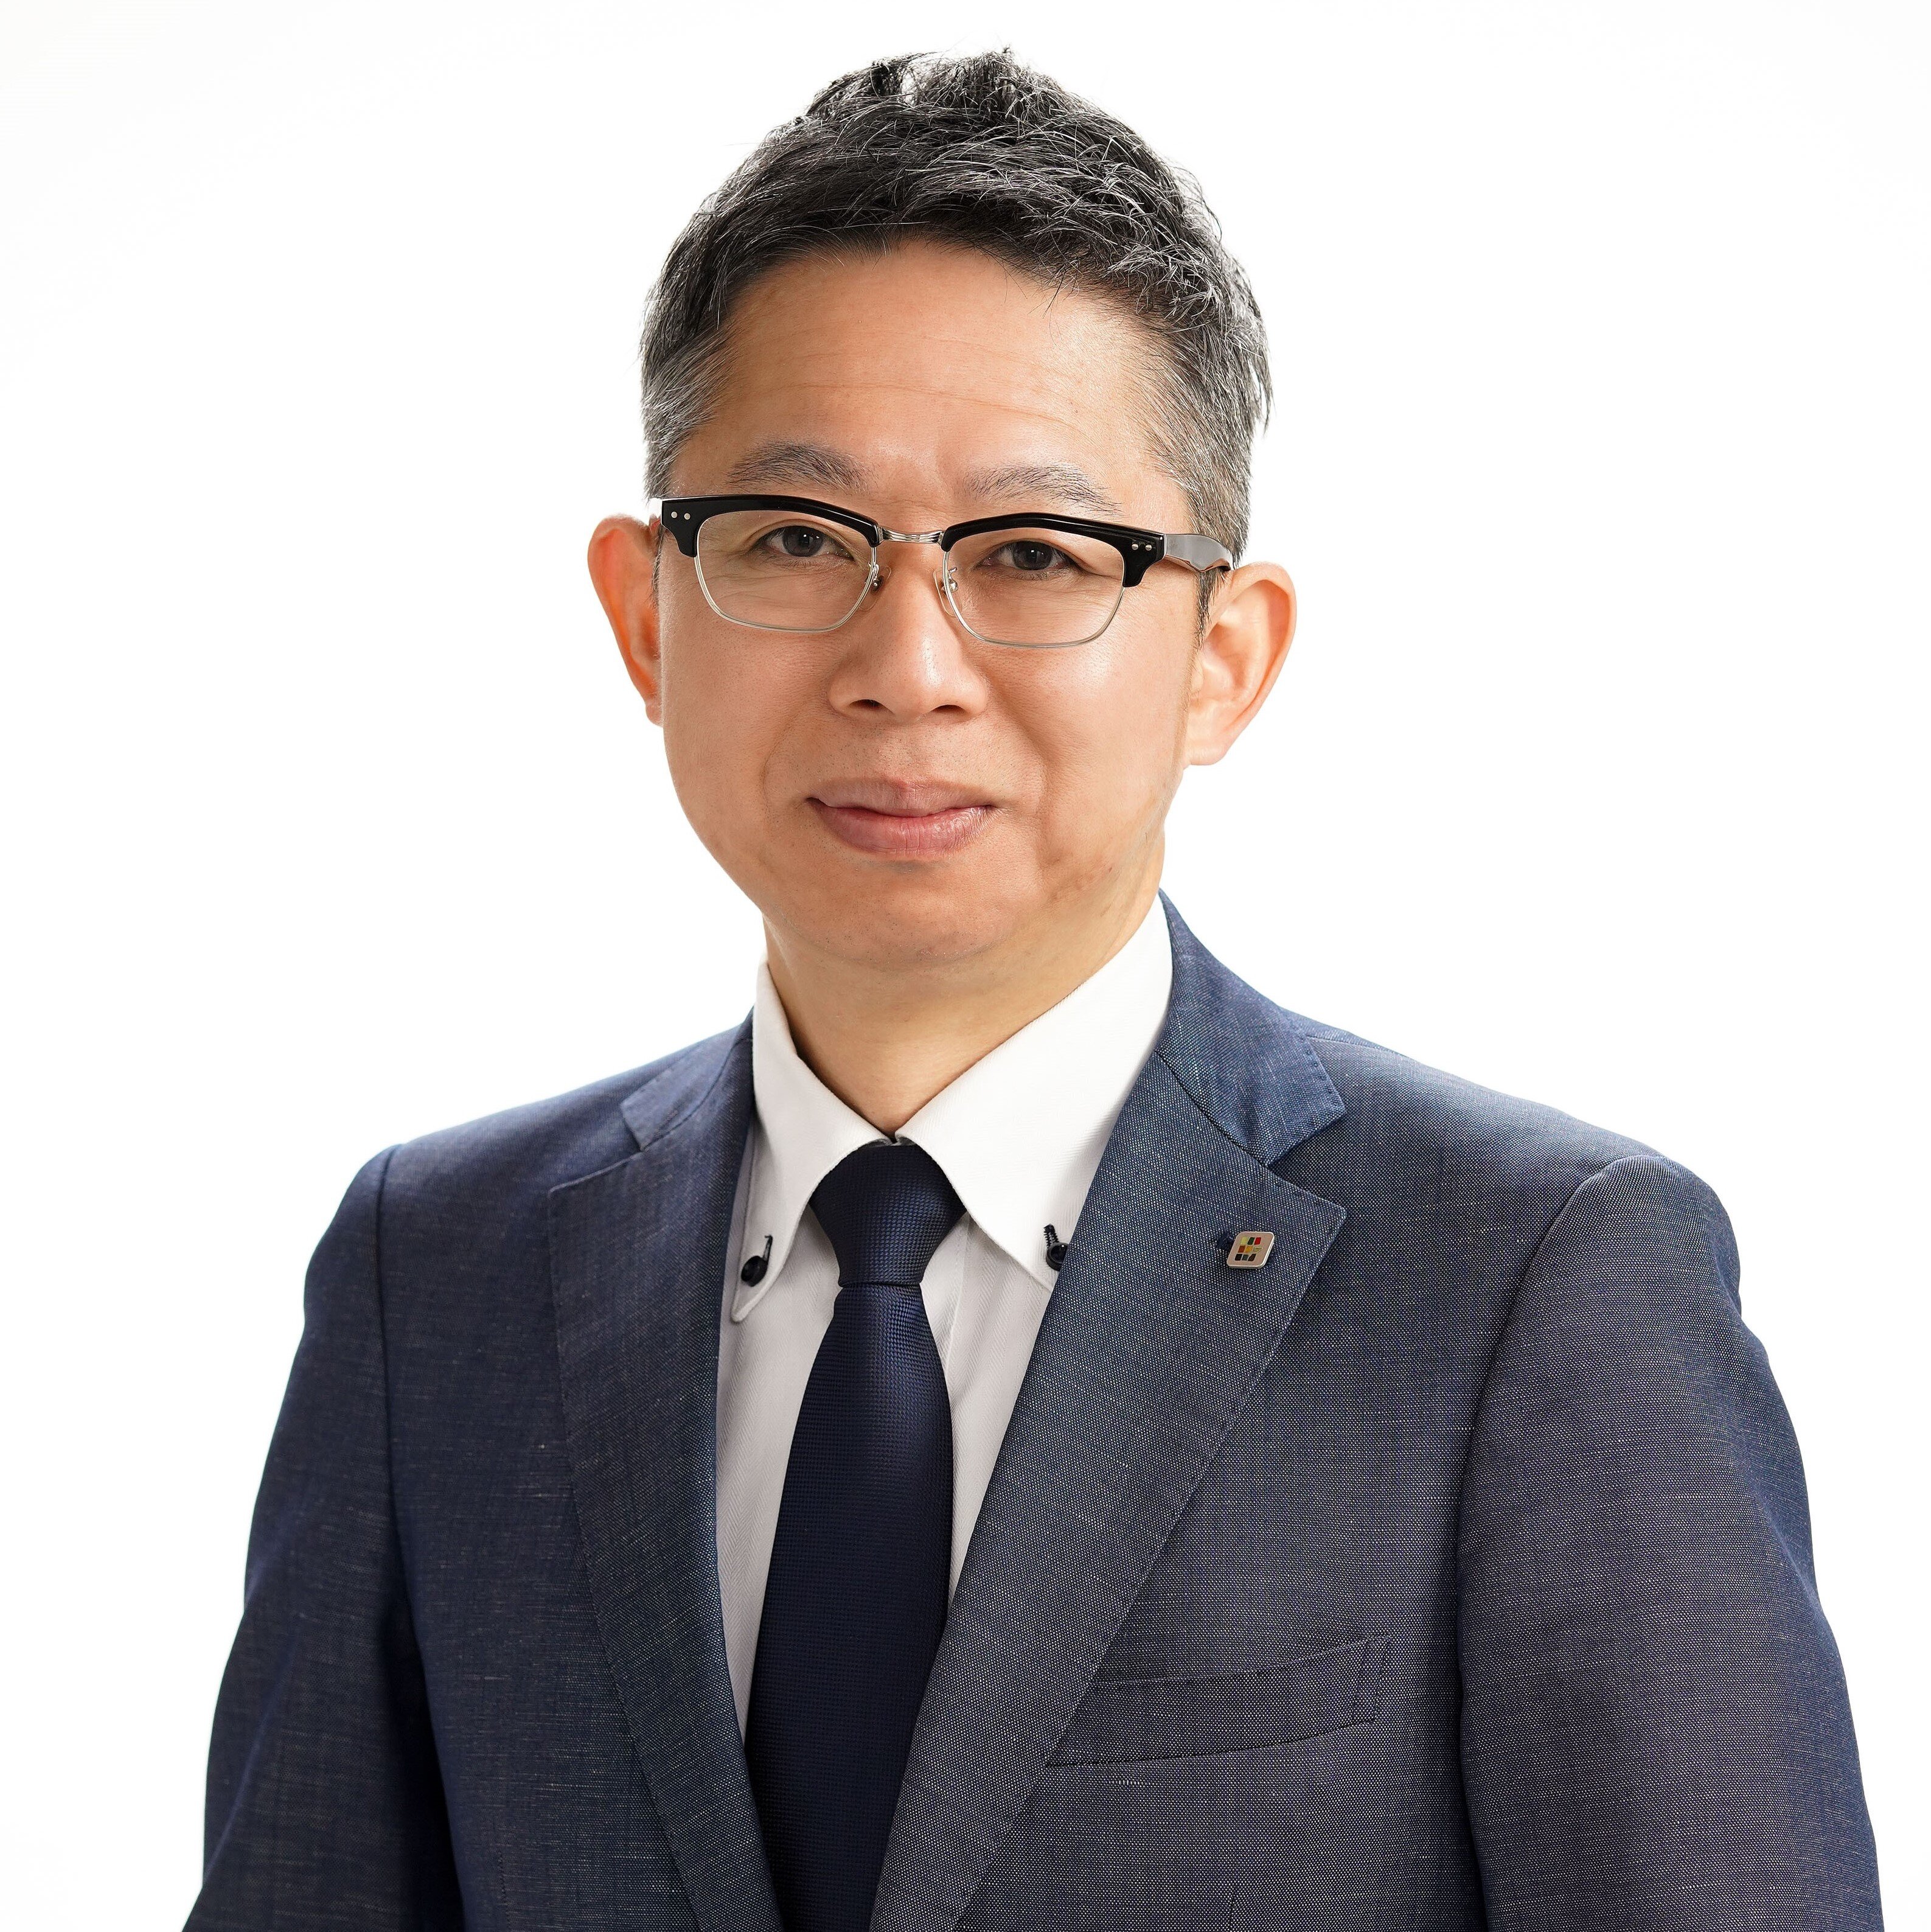 アミタサーキュラー株式会社 代表取締役社長 土元 健司